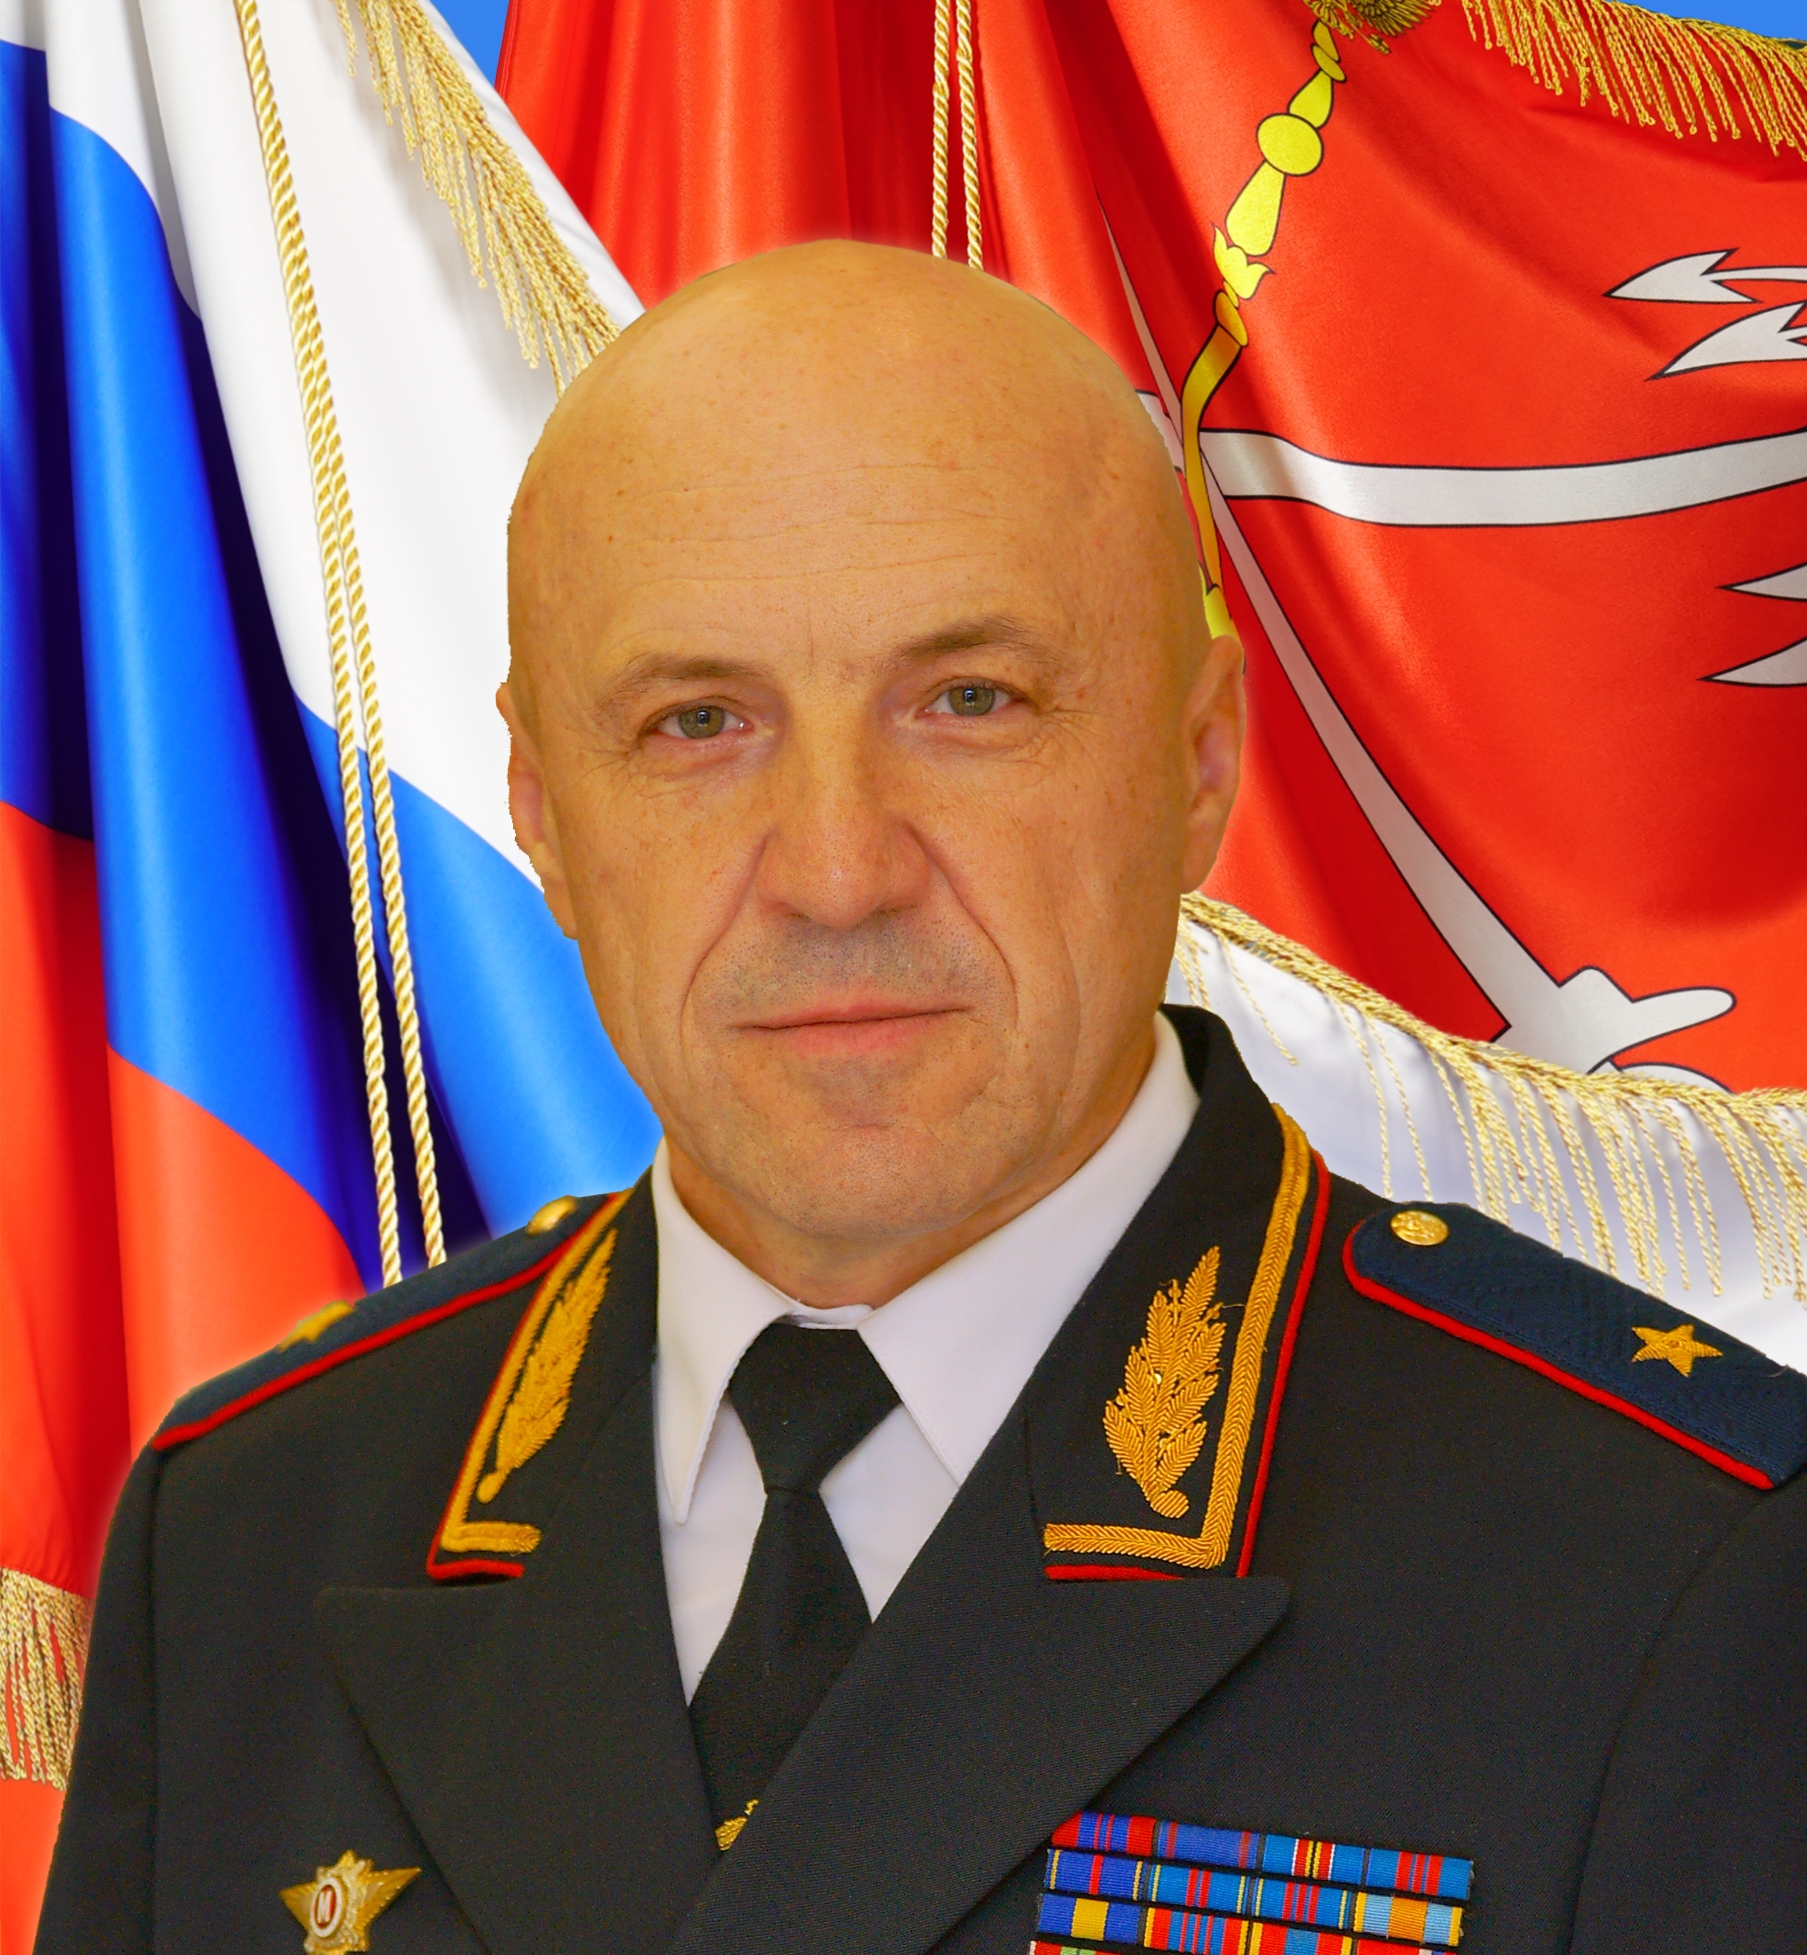                         Amelchakov Igor
            